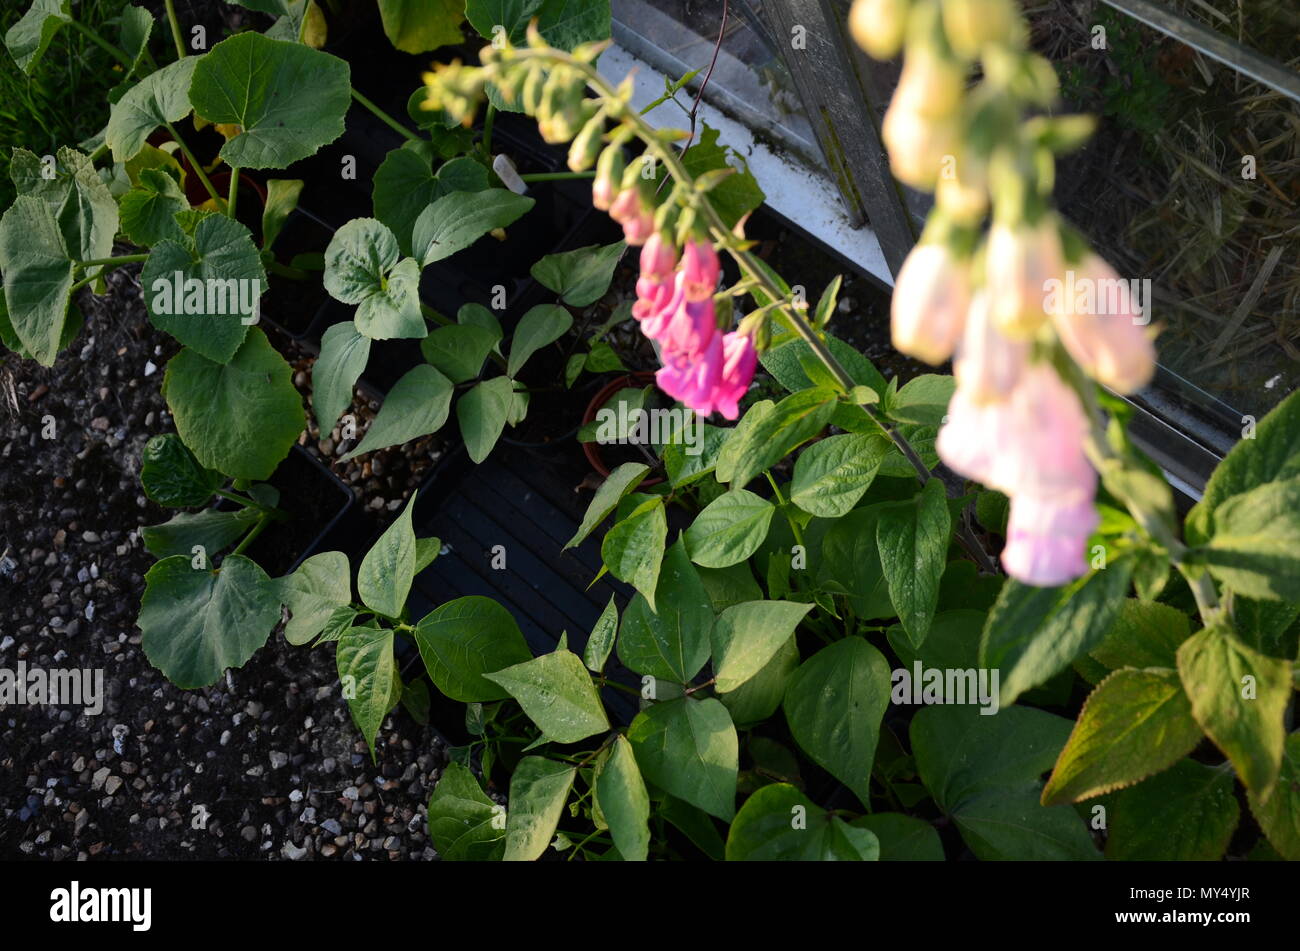 Digitales (Digitalis purpurea) et le français escalade les plants de haricots dans des pots, Chalet jardin, juin, England, UK Banque D'Images